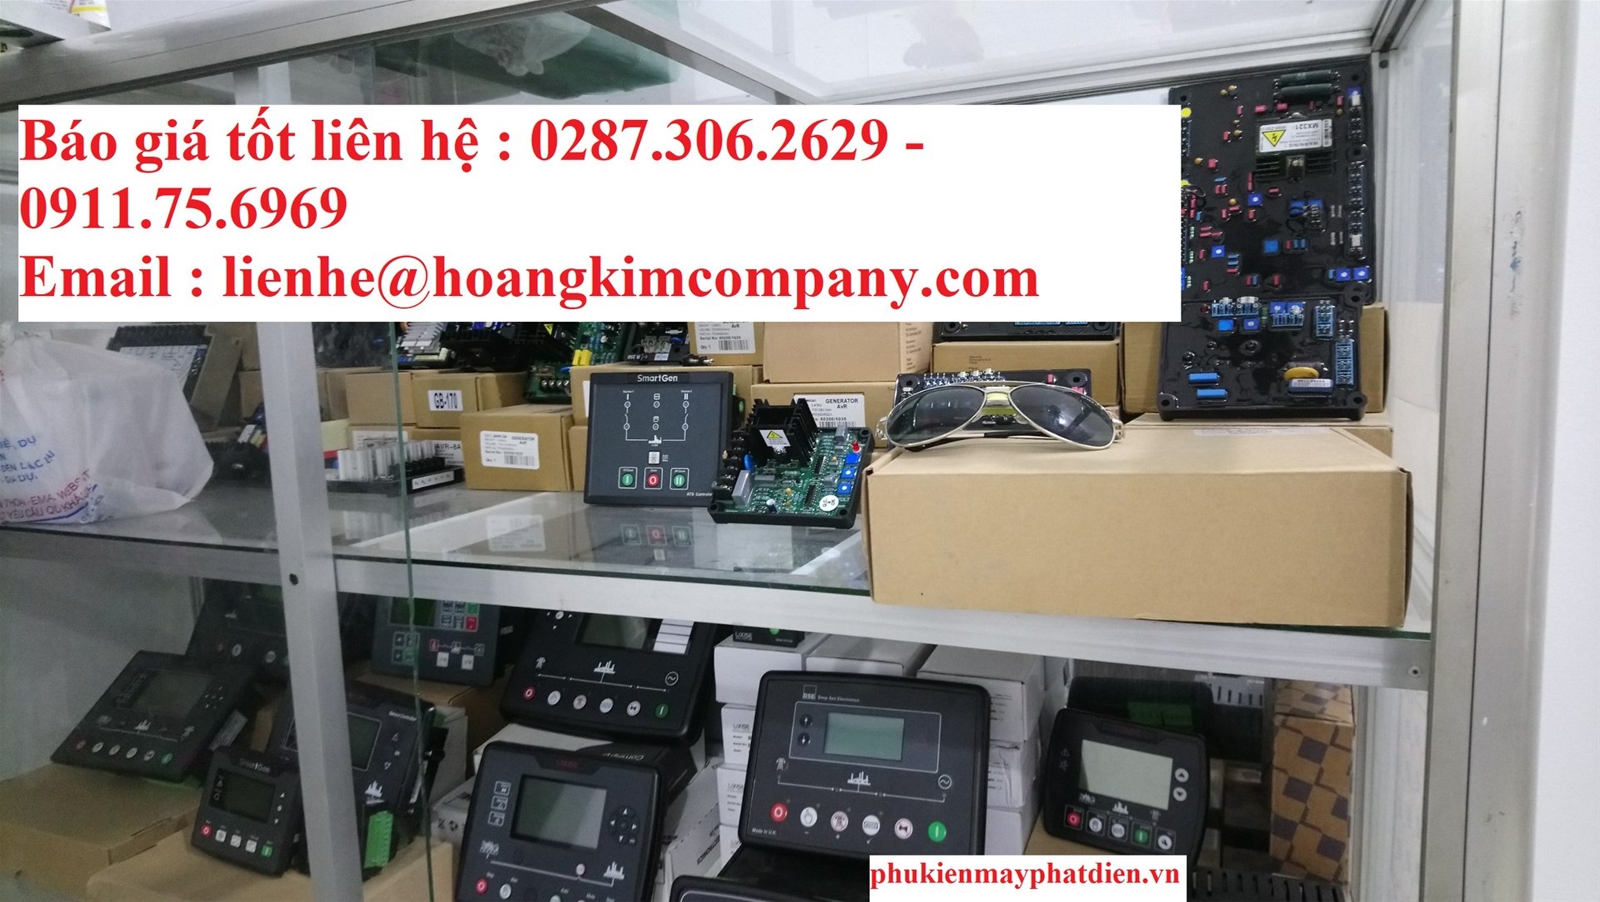 Công ty phụ tùng máy phát điện Hoàng Kim